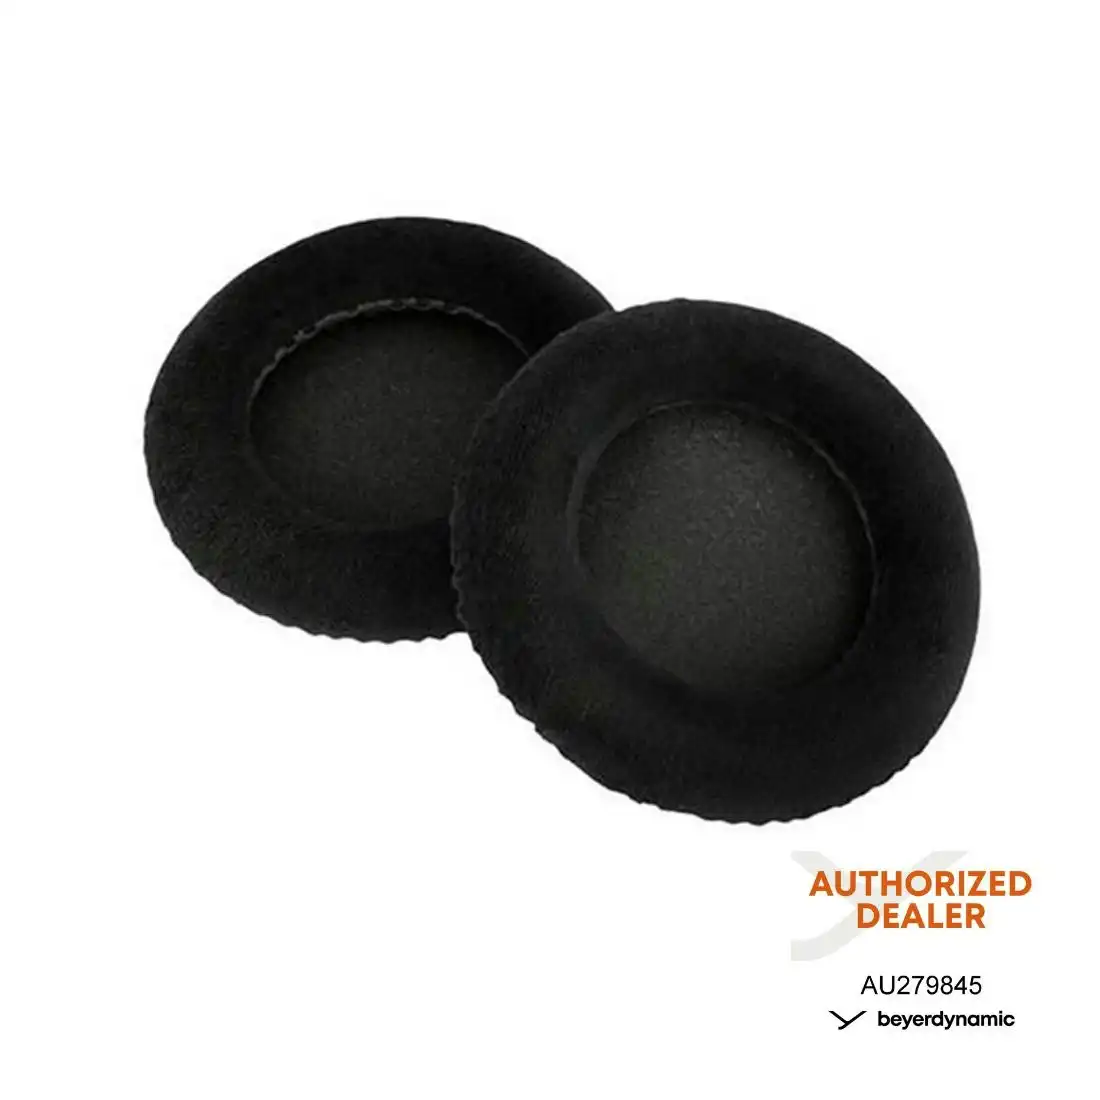 Beyerdynamic Genuine Velour Ear Pads Cushions EDT770VB - Black (Pair)